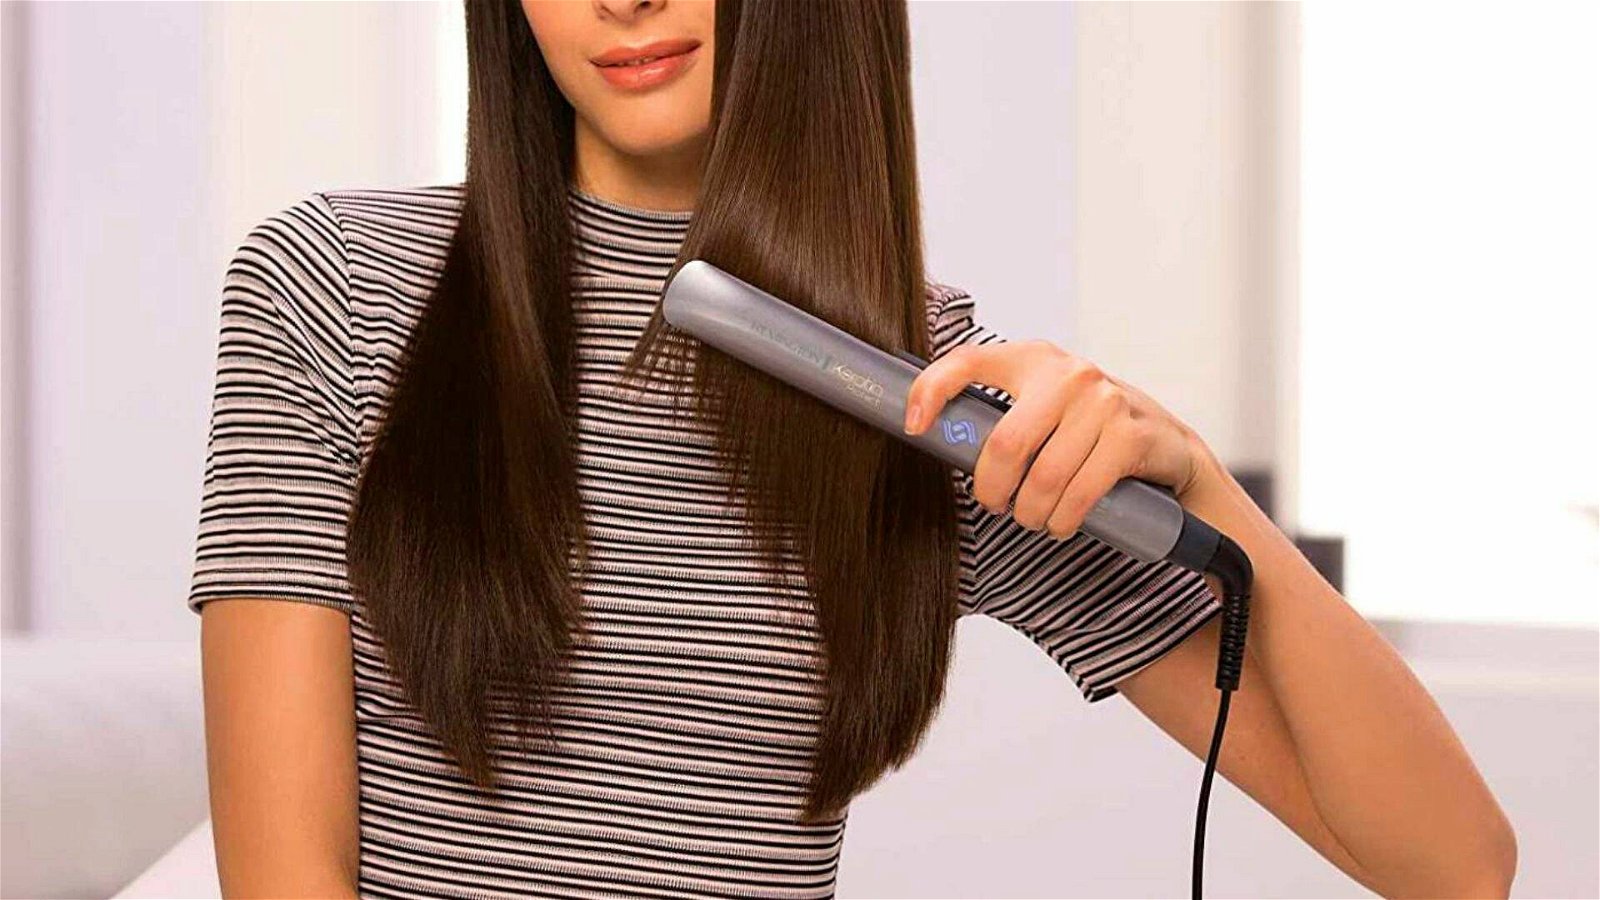 Immagine di Piastra per capelli a vapore BaByliss ad un prezzo shock su Amazon!